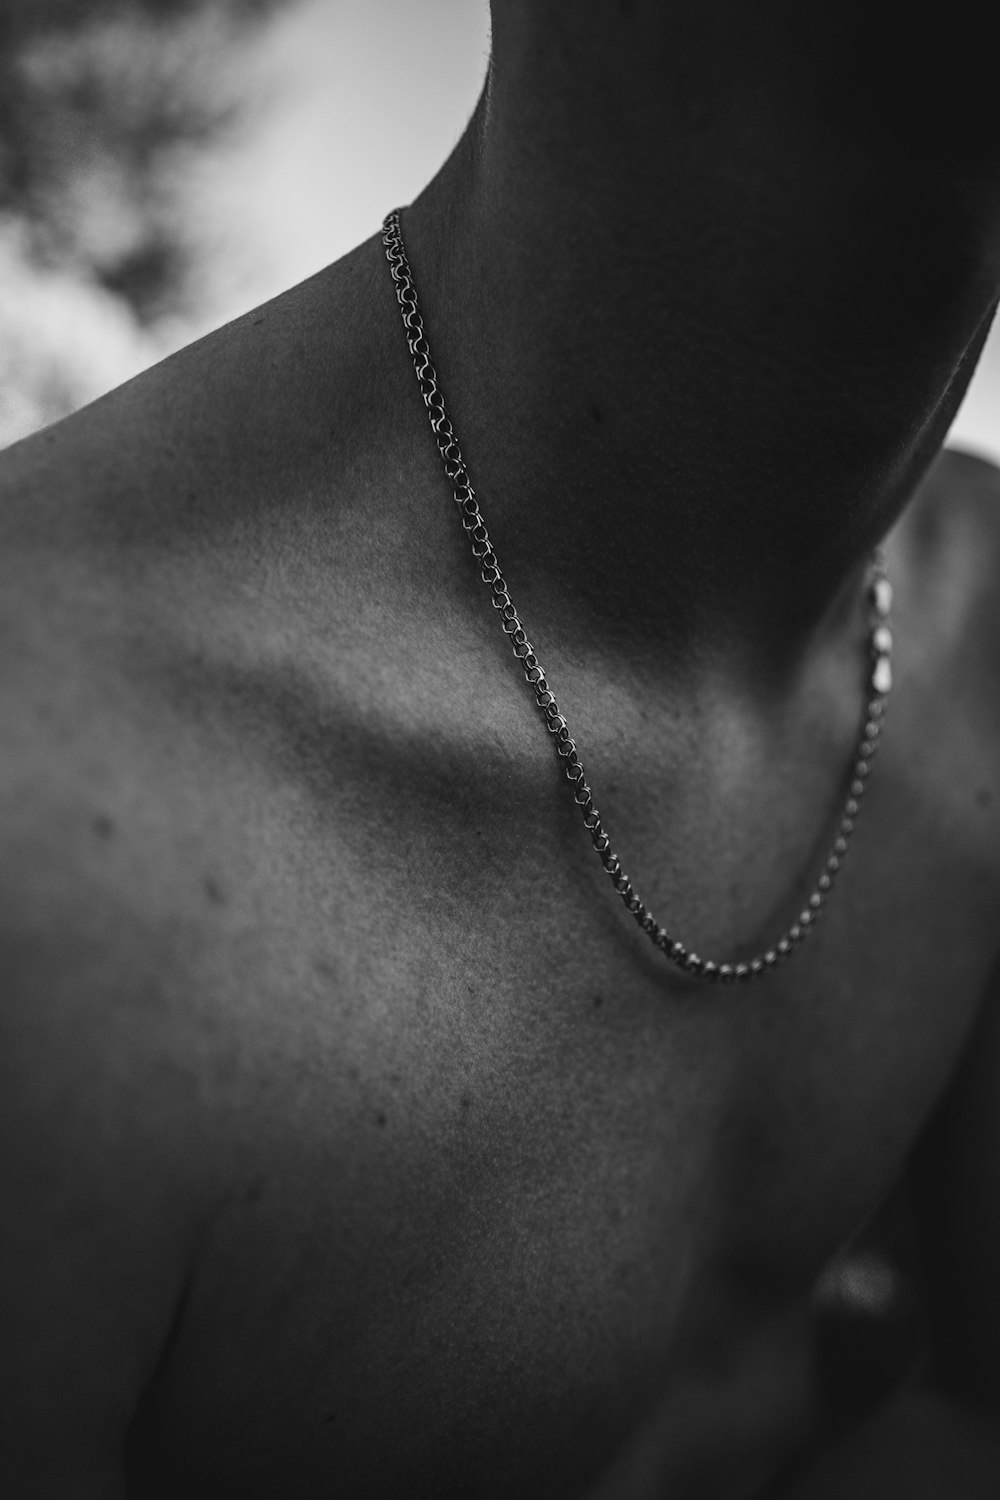 Fotografía en blanco y negro de un hombre con un collar de cadena